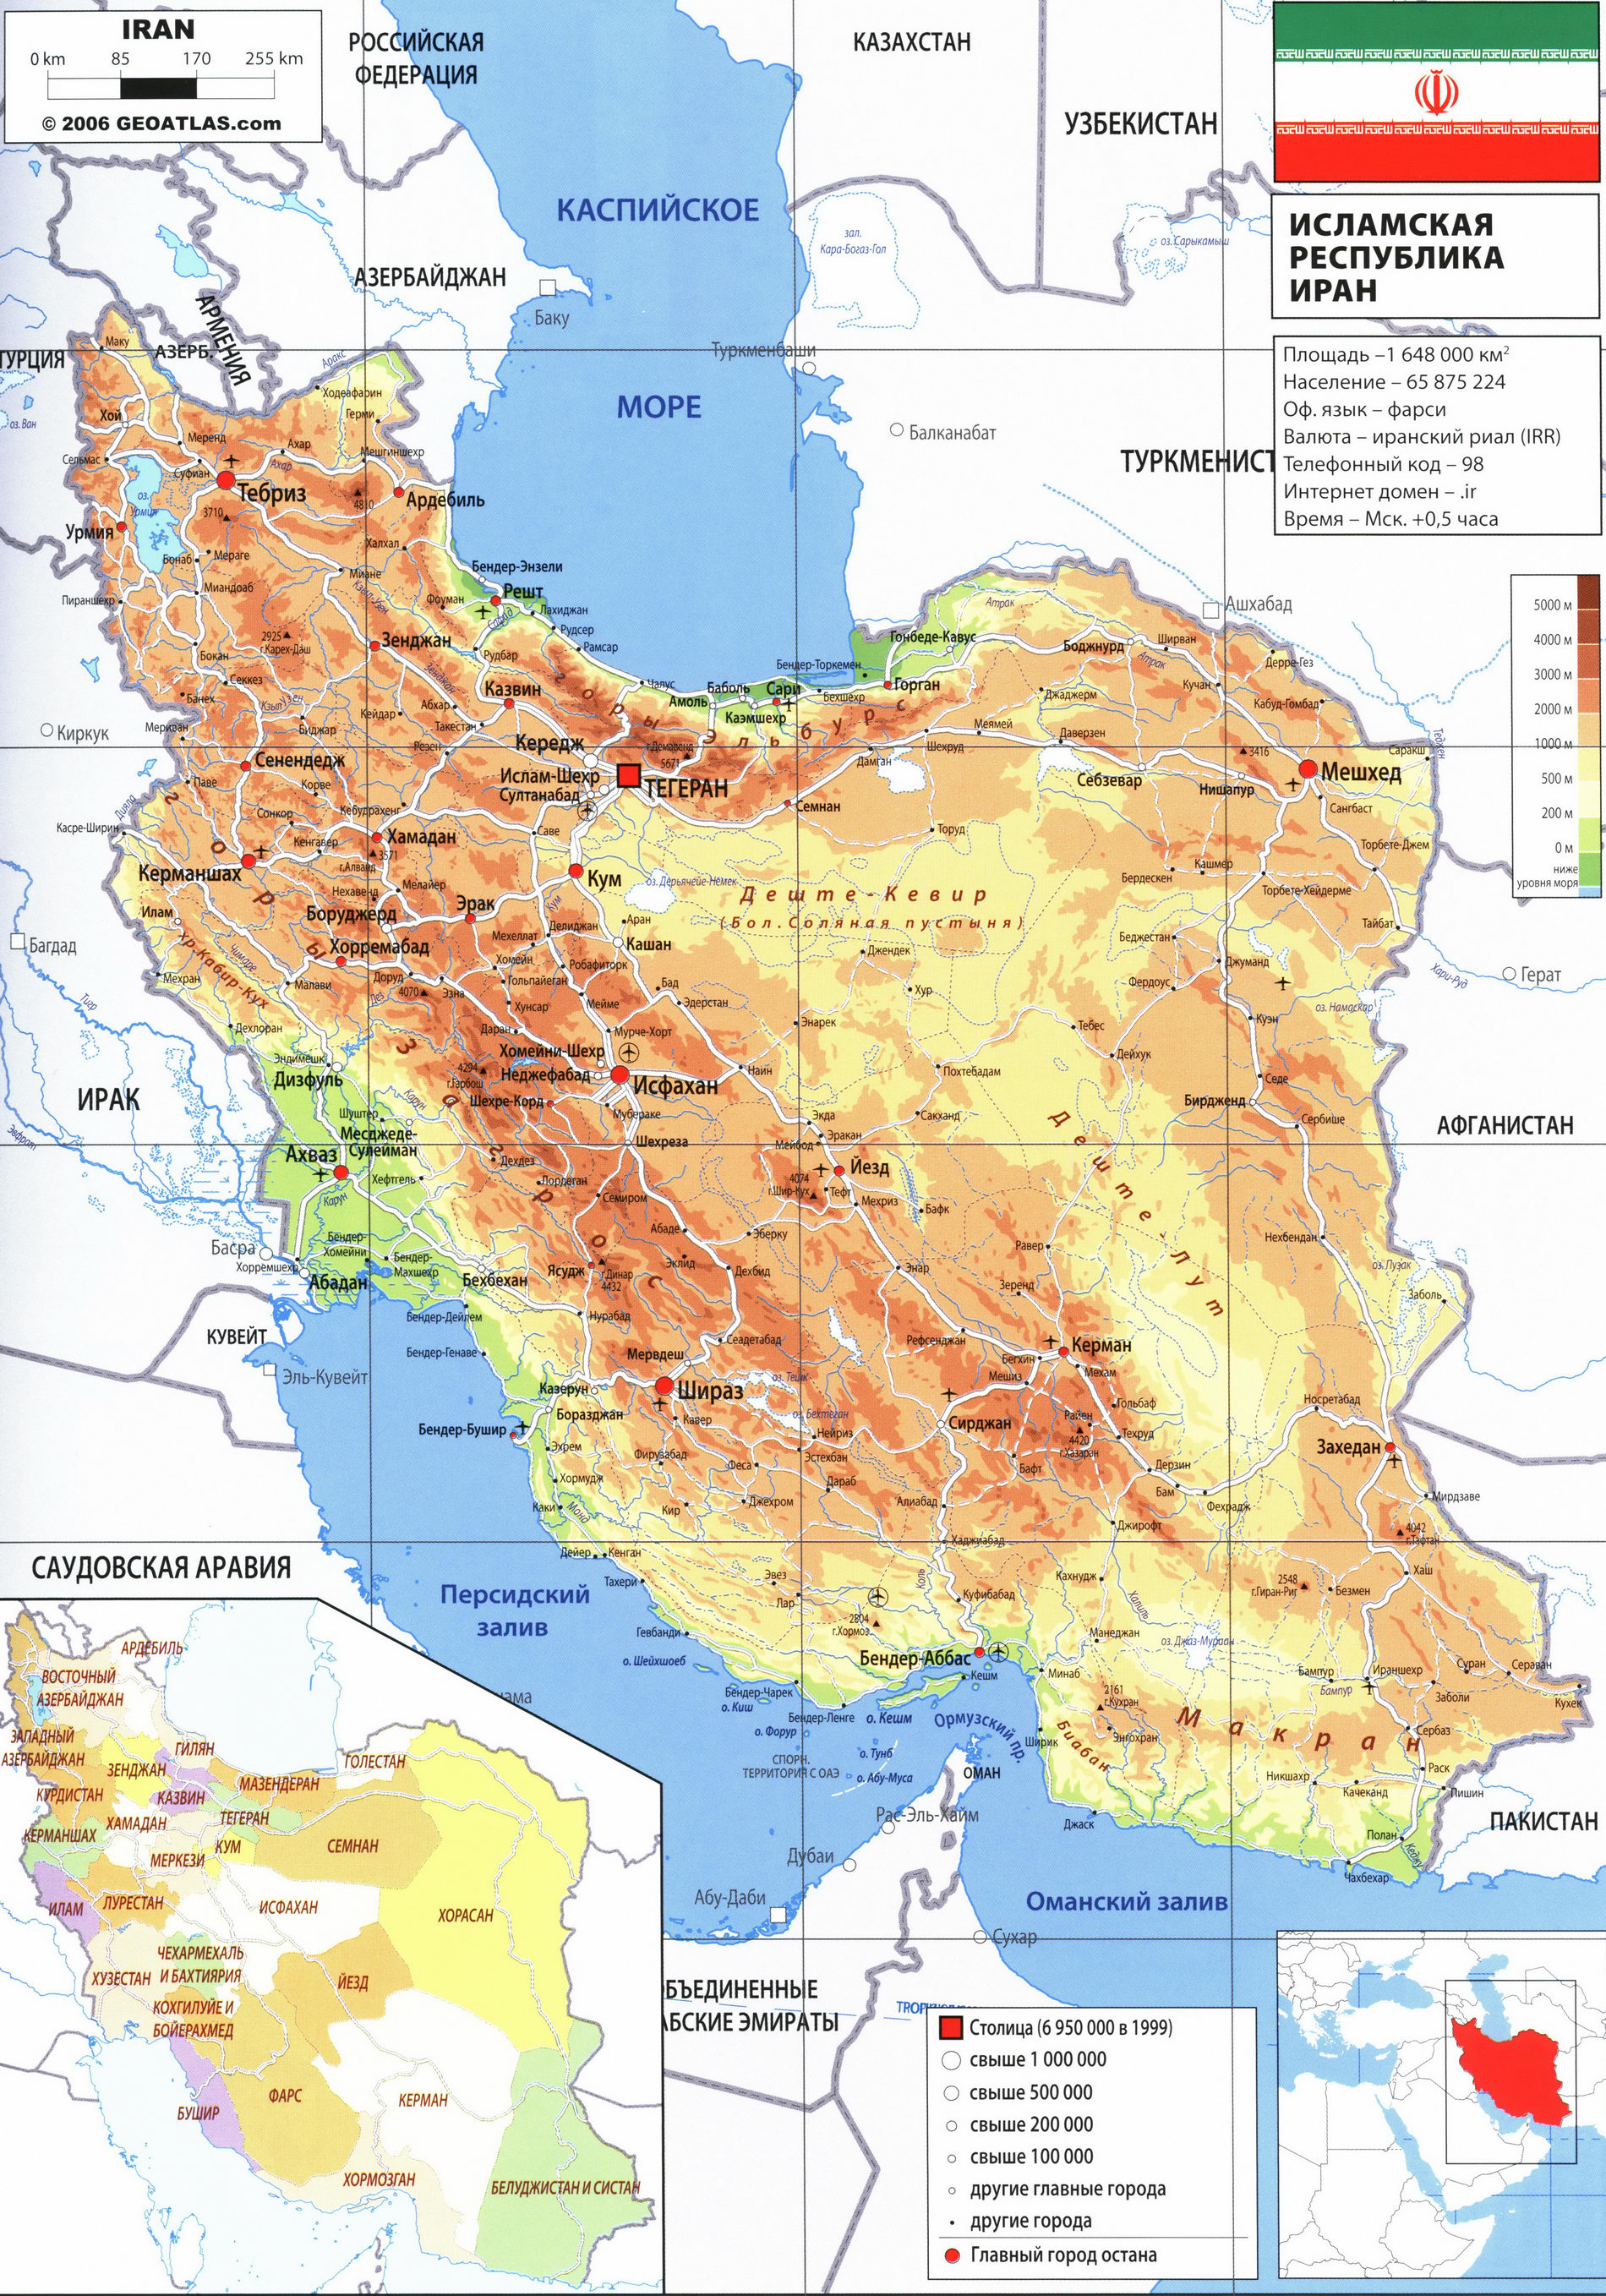 Иран карта на русском языке, география описание страны - Атлас мира